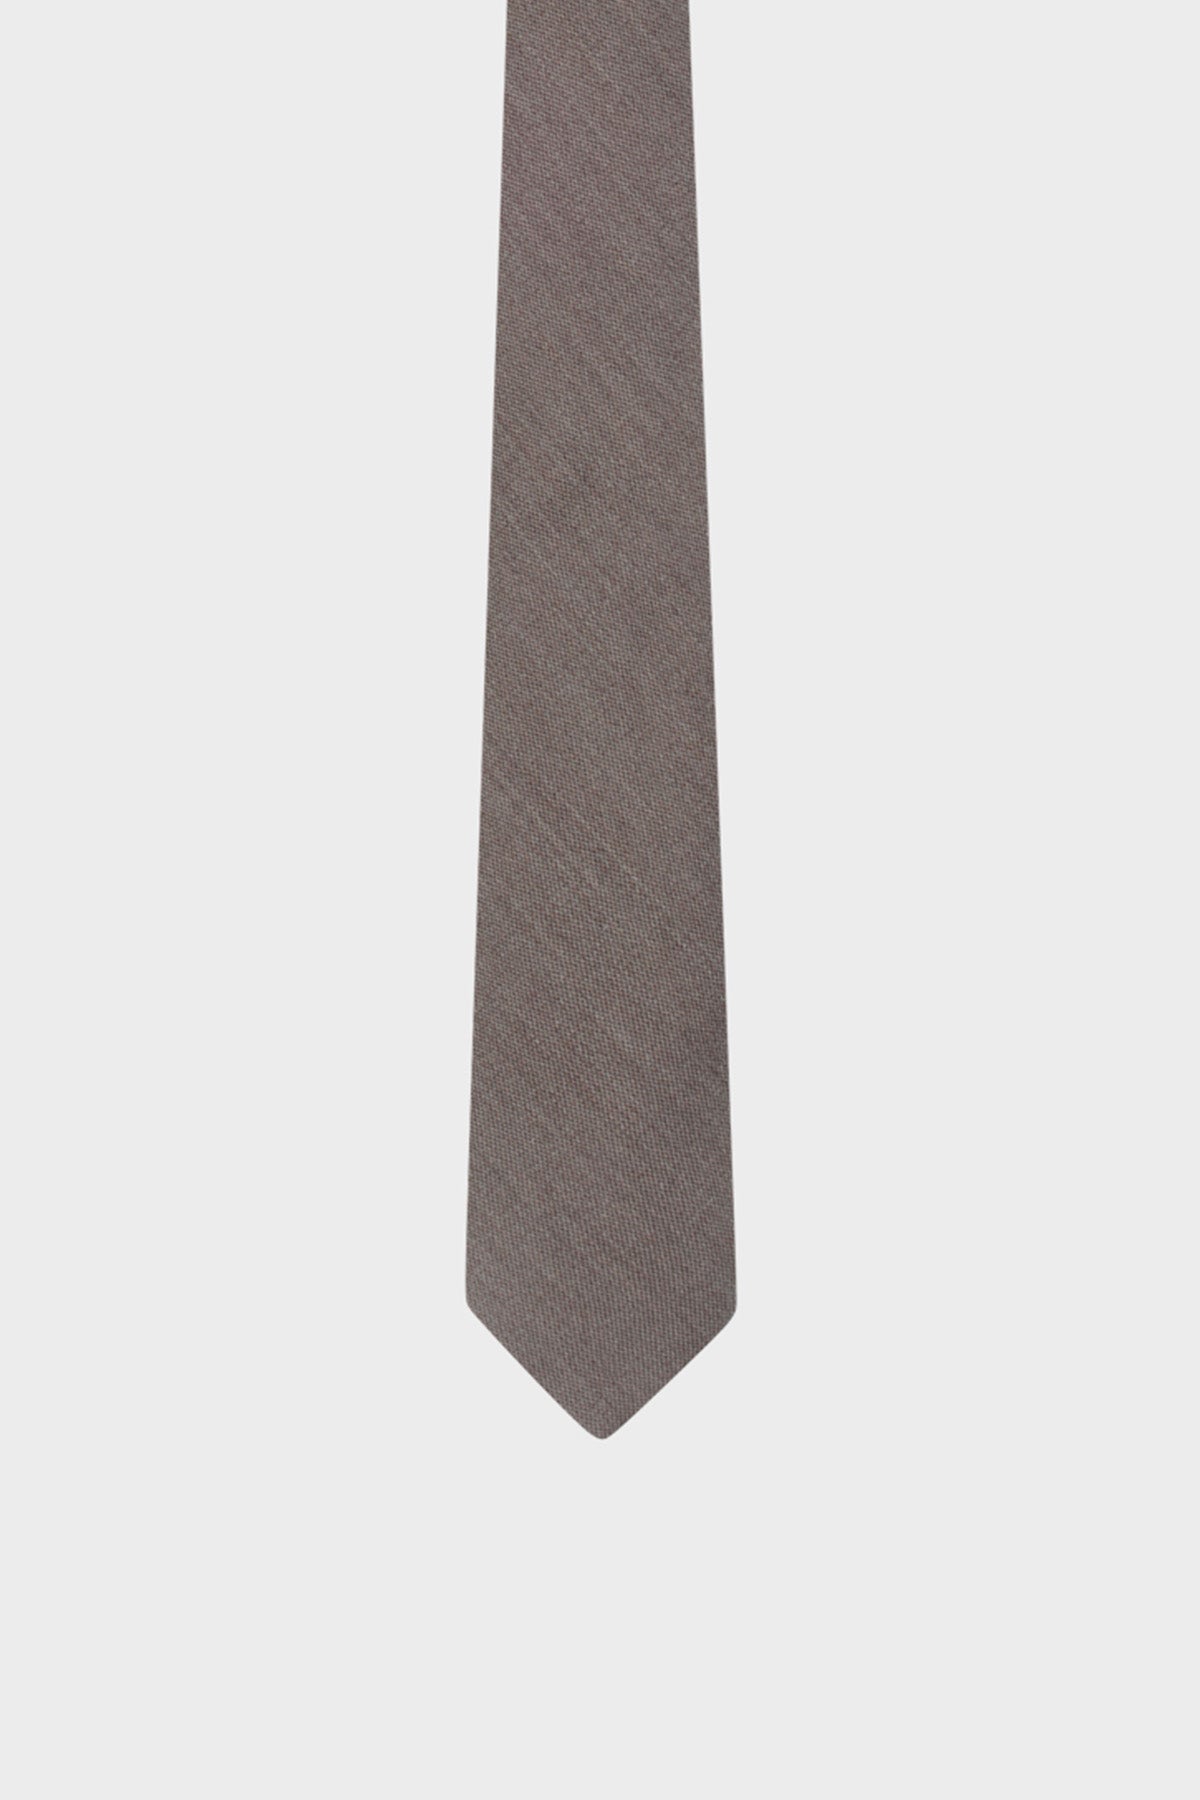 Cravate Ultimate Beige